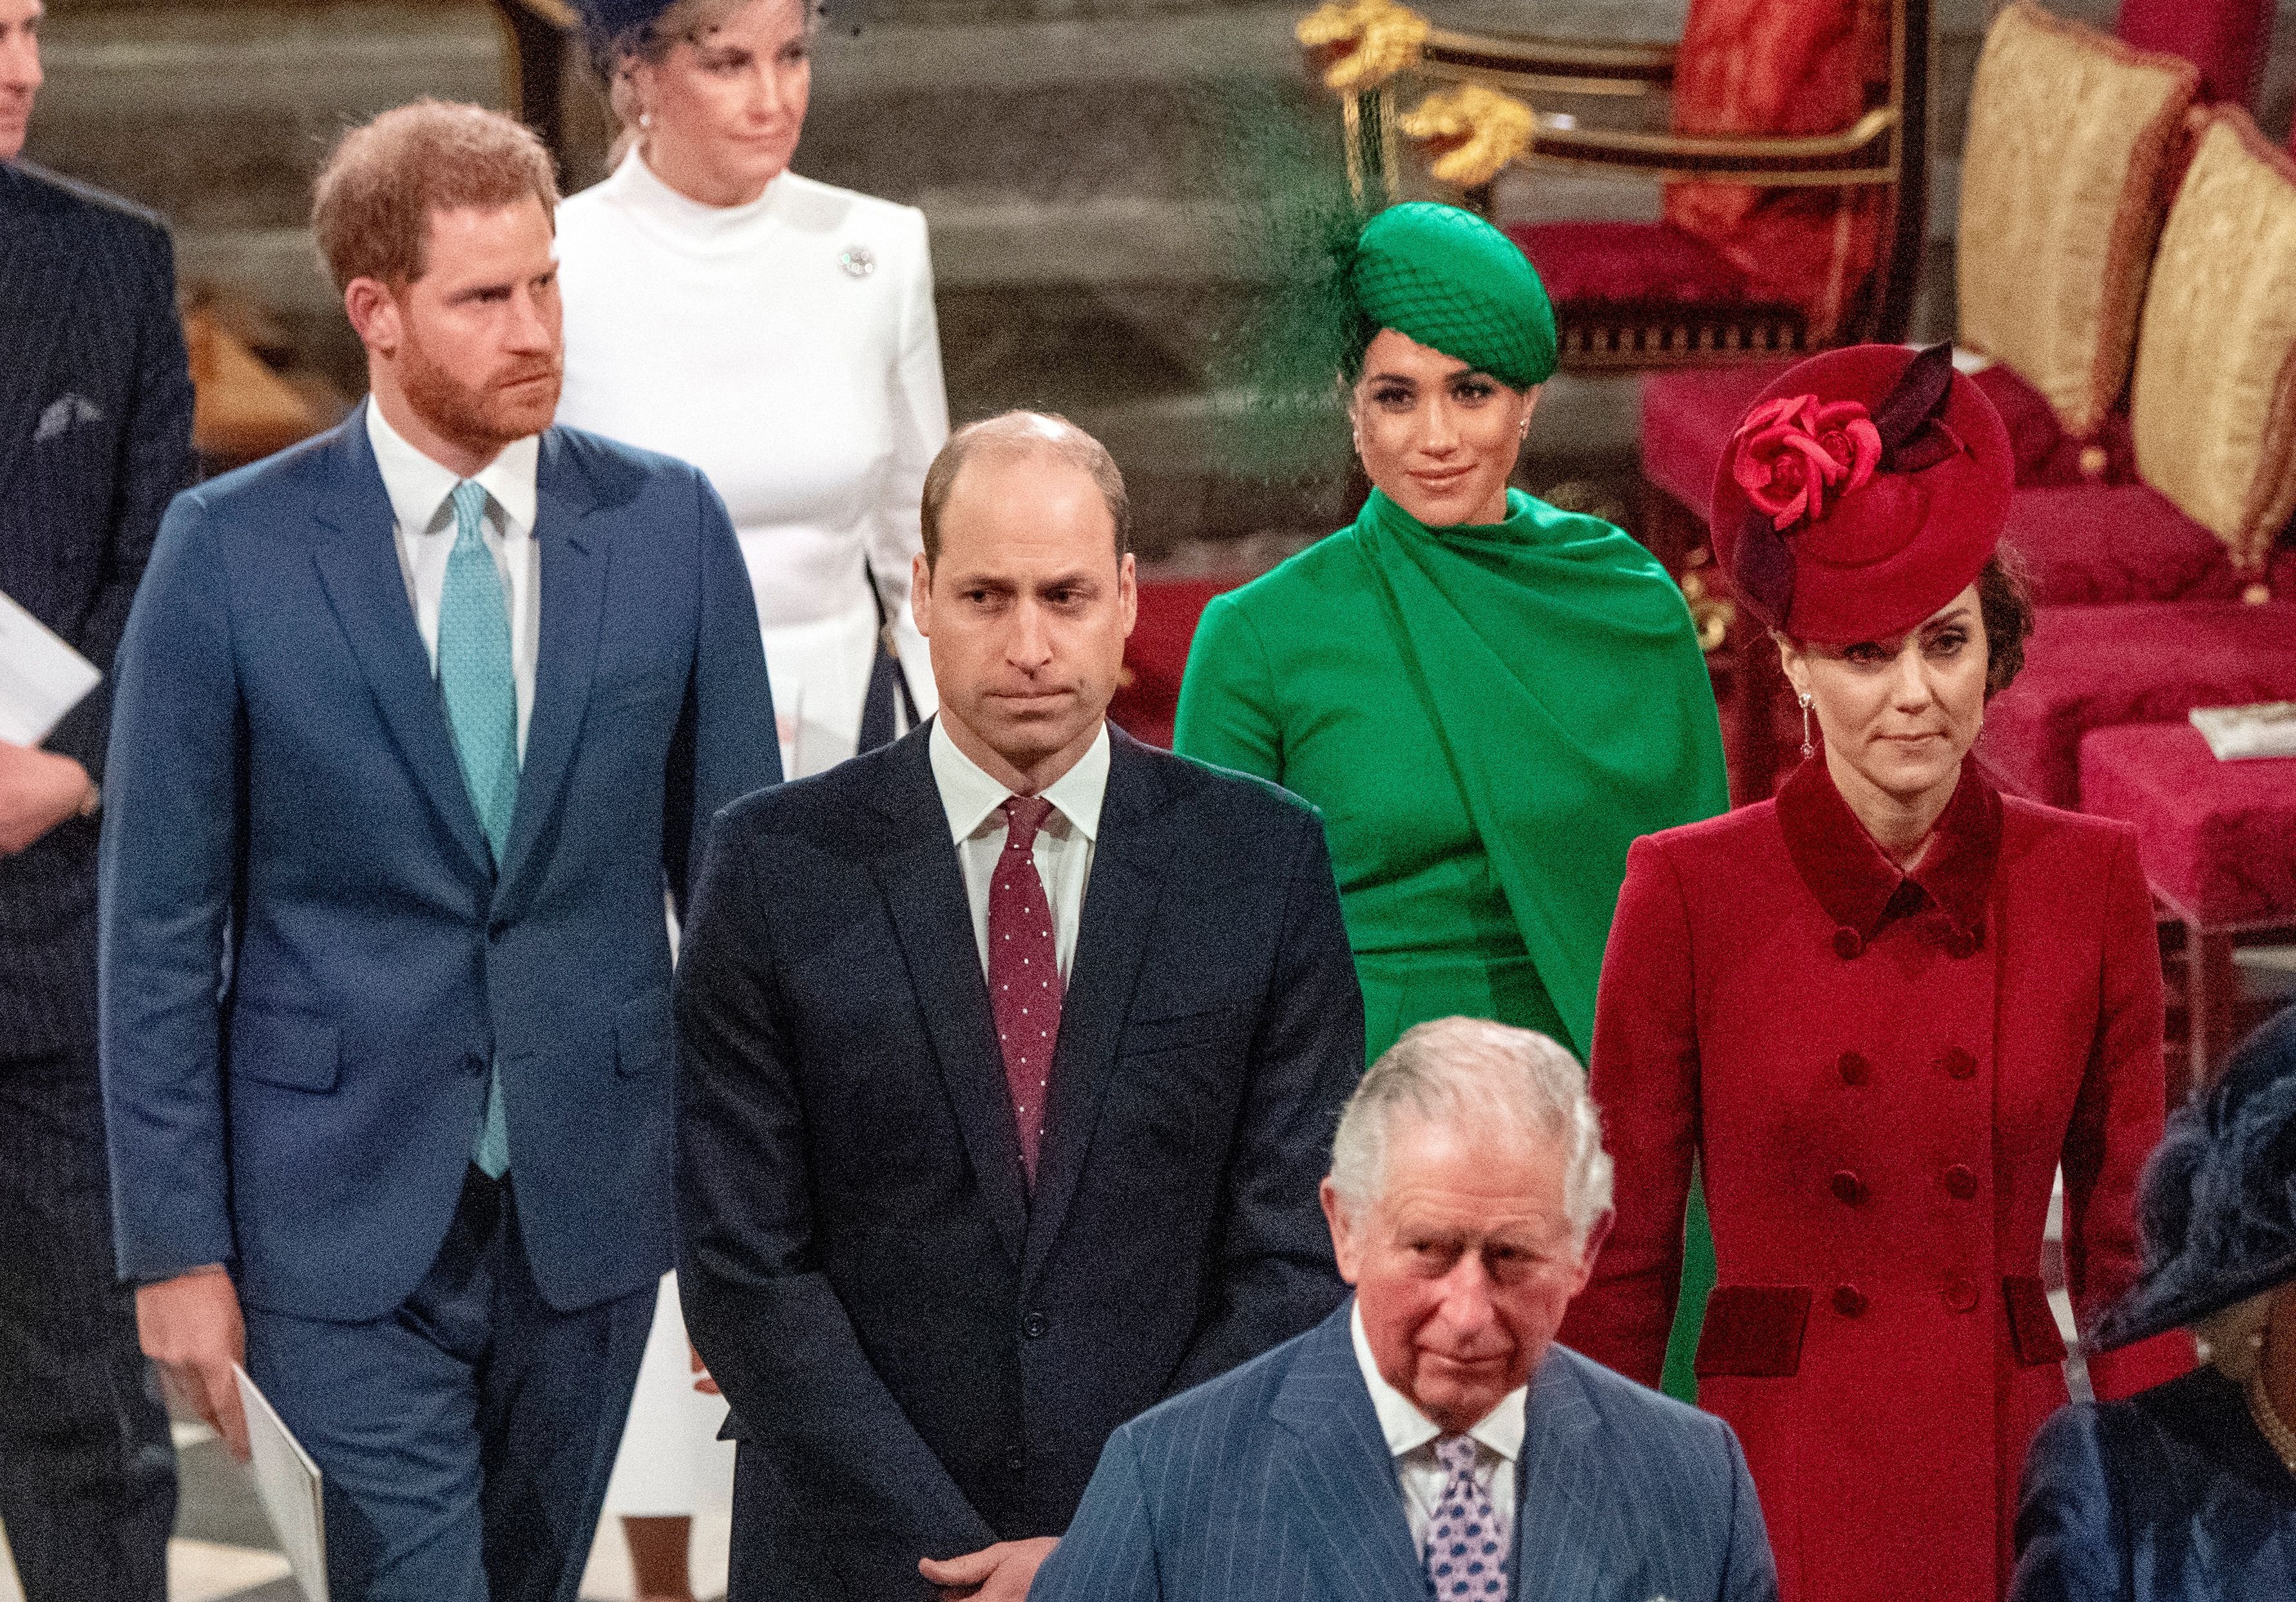 El príncipe Harry, Meghan Markle, el príncipe William, Kate Middleton y el príncipe Charles en la Abadía de Westminster en Londres, el 9 de marzo de 2020. | Foto: Getty Images